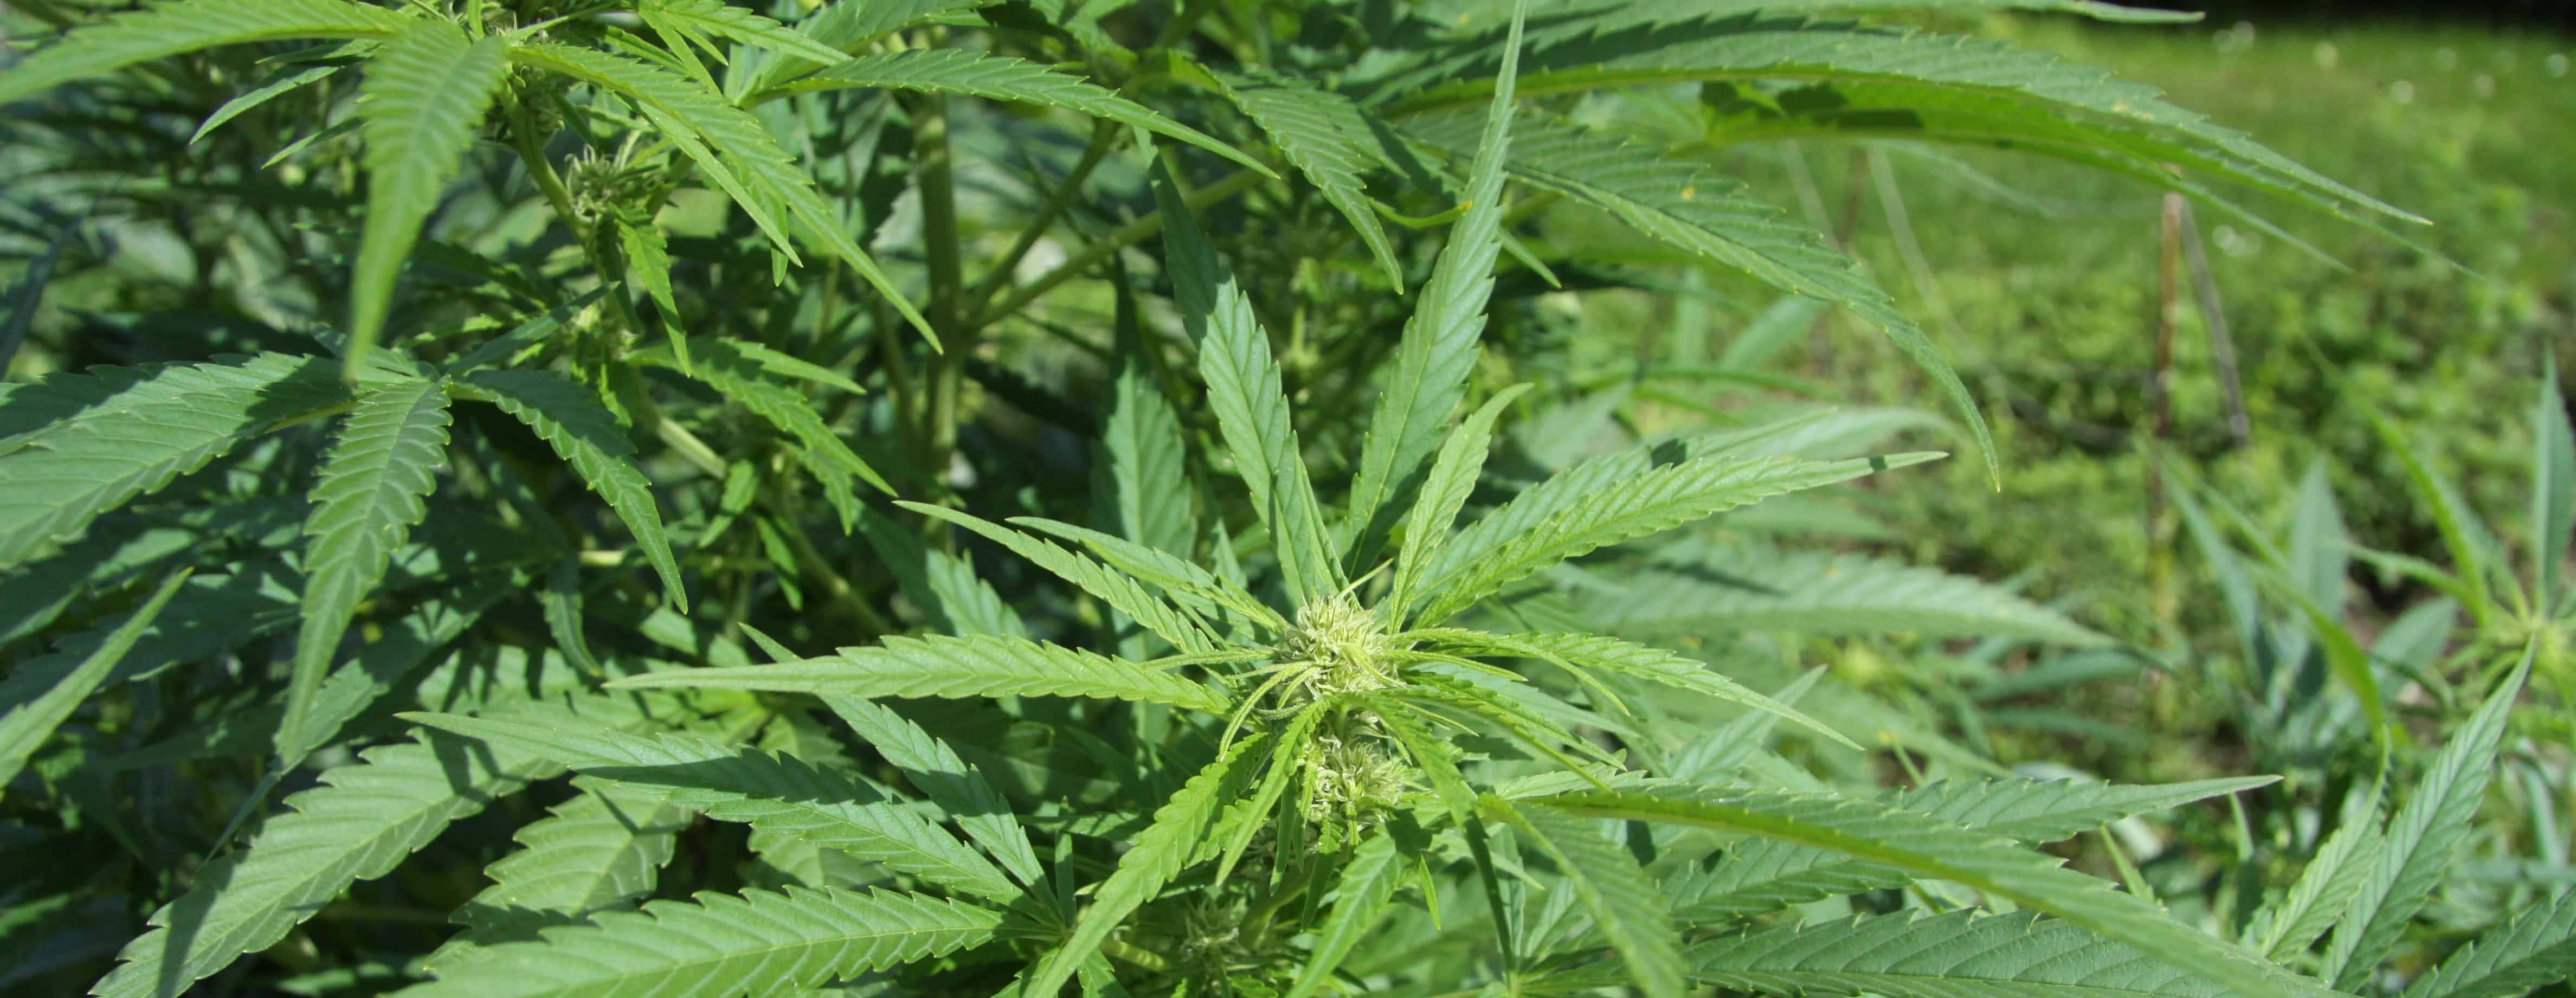 hemp-cannabis-jpg-11